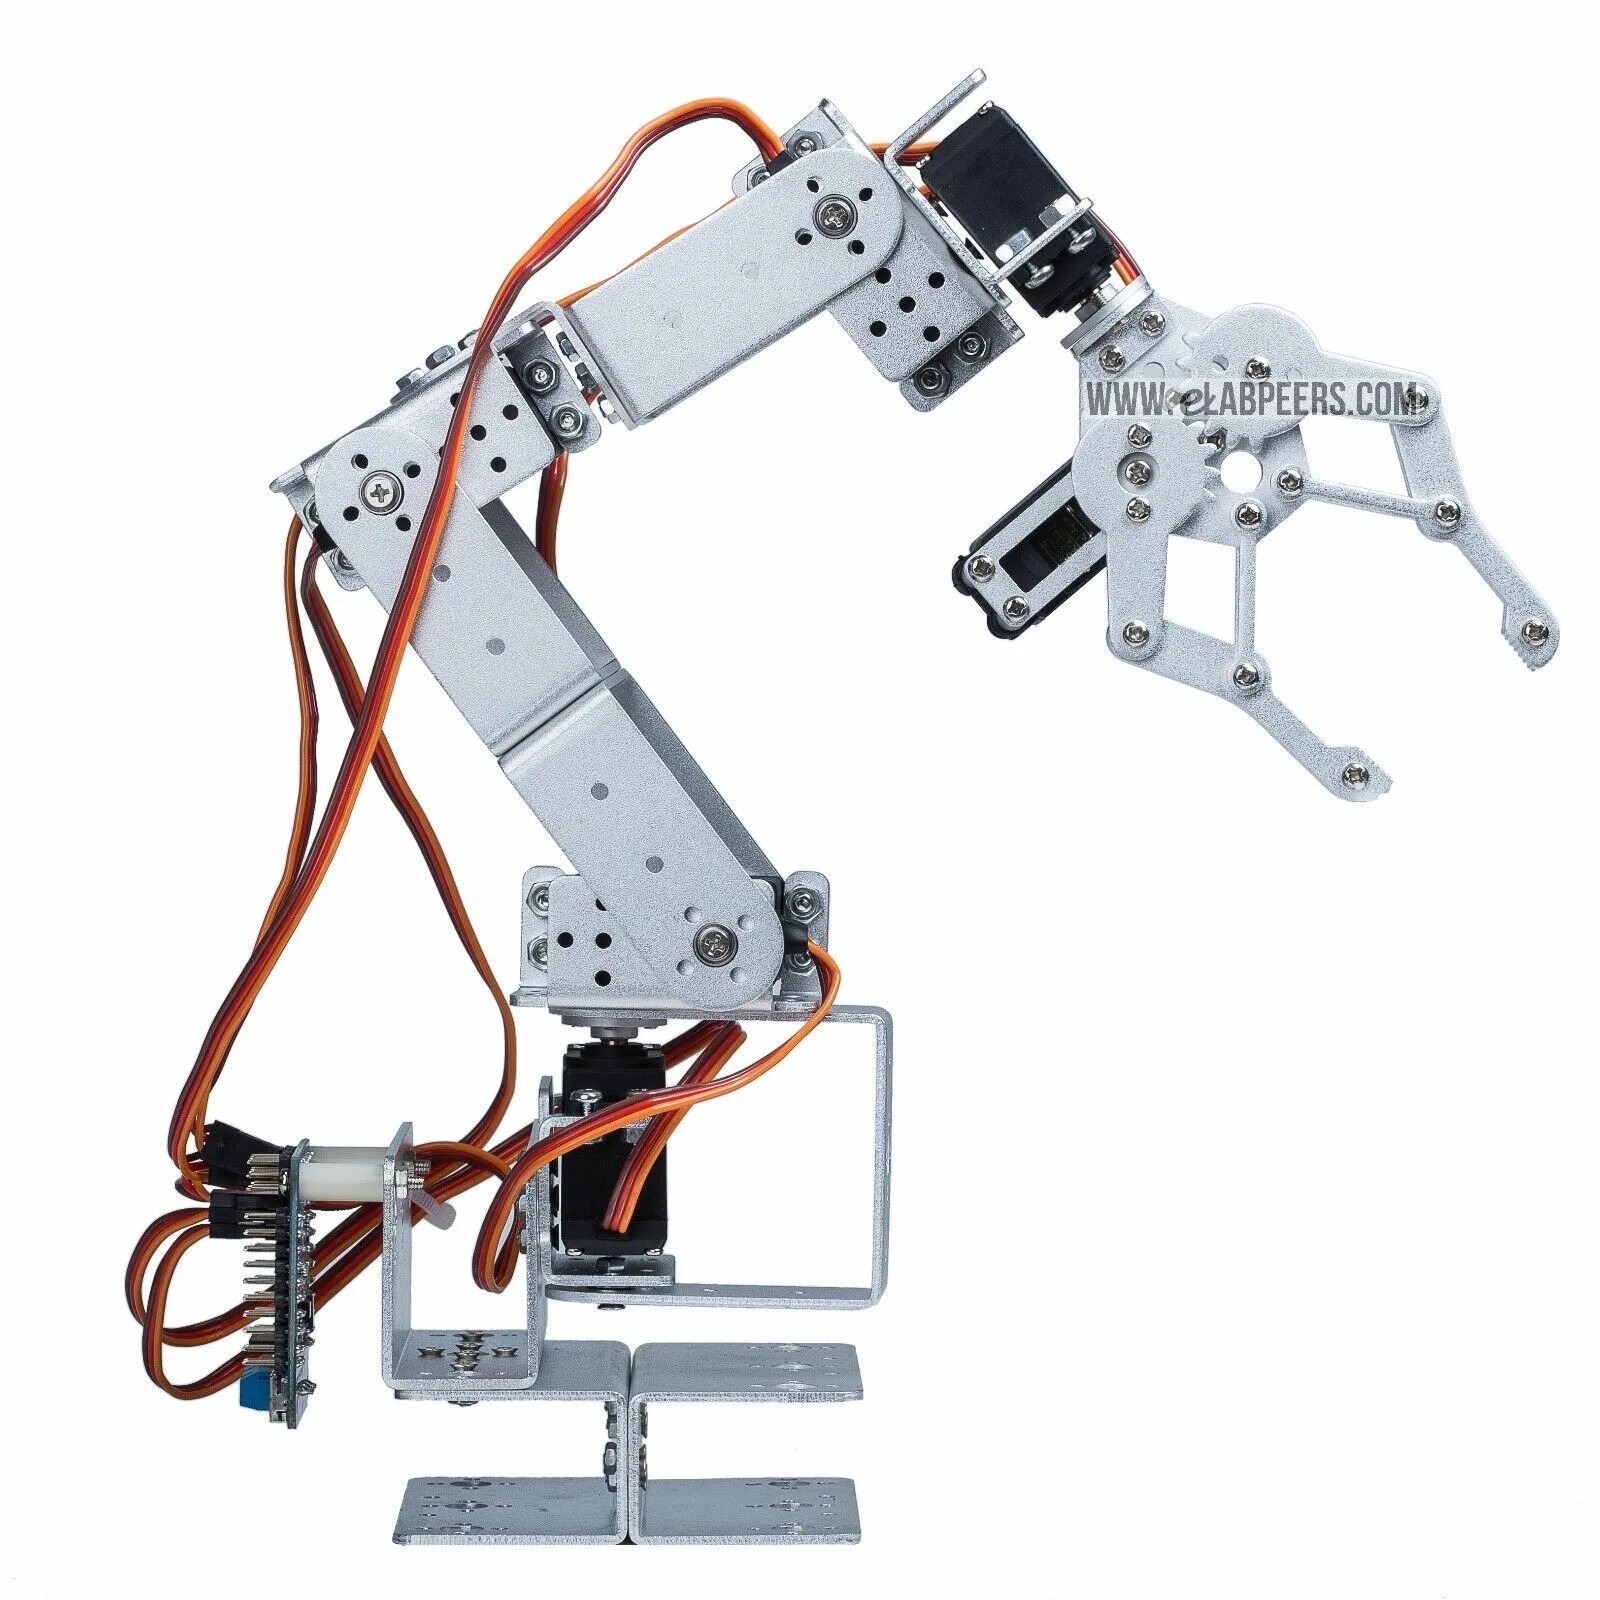 Купить роборуку. Робот 6dof Arduino. Робот манипулятор на сервоприводах mg996r 3d модель. Робот манипулятор mg996r ds3115. Робот-манипулятор LD-tg1400-6.